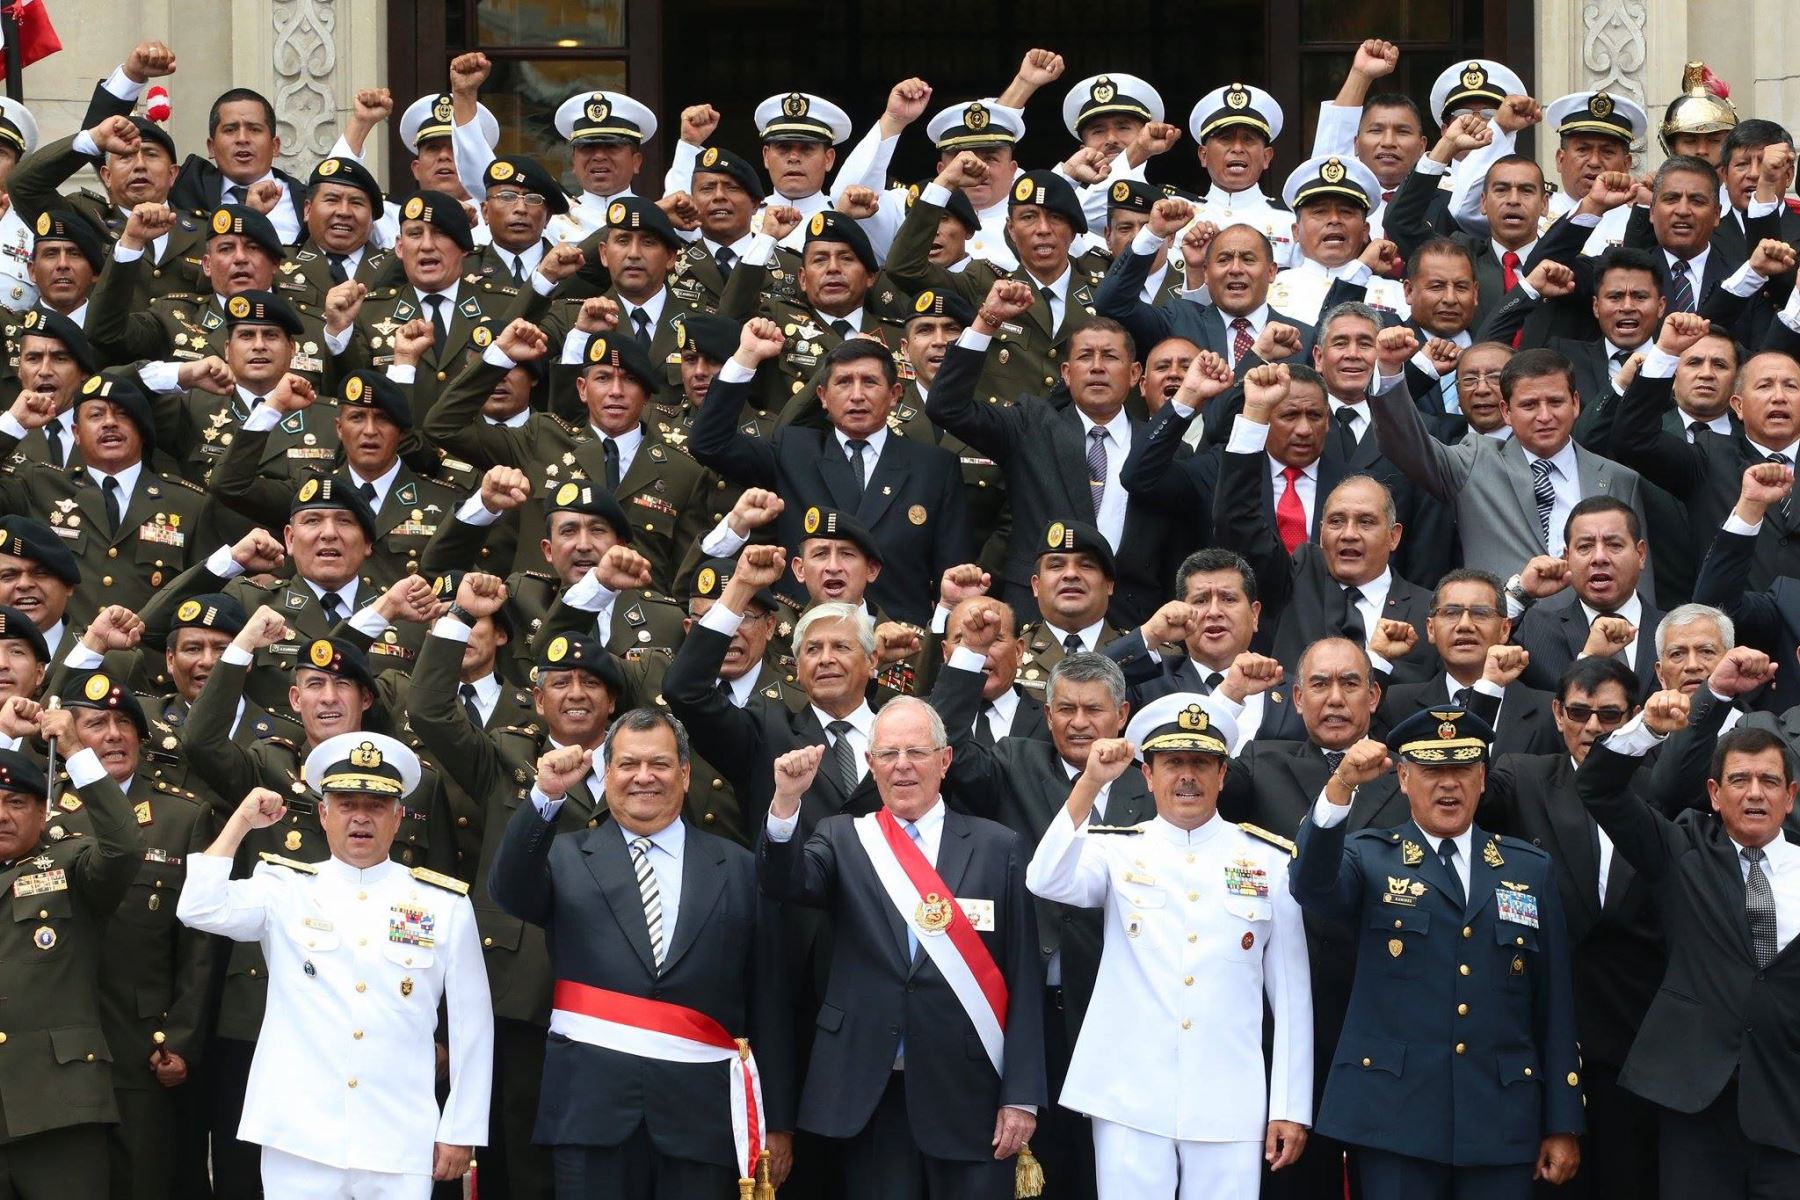 El Jefe del Estado, Pedro Pablo Kuczynski, impone la condecoración Orden Militar de Ayacucho en el grado de Gran Cruz al estandarte de la operación militar Chavín de Huántar. Foto: ANDINA/ Prensa Presidencia